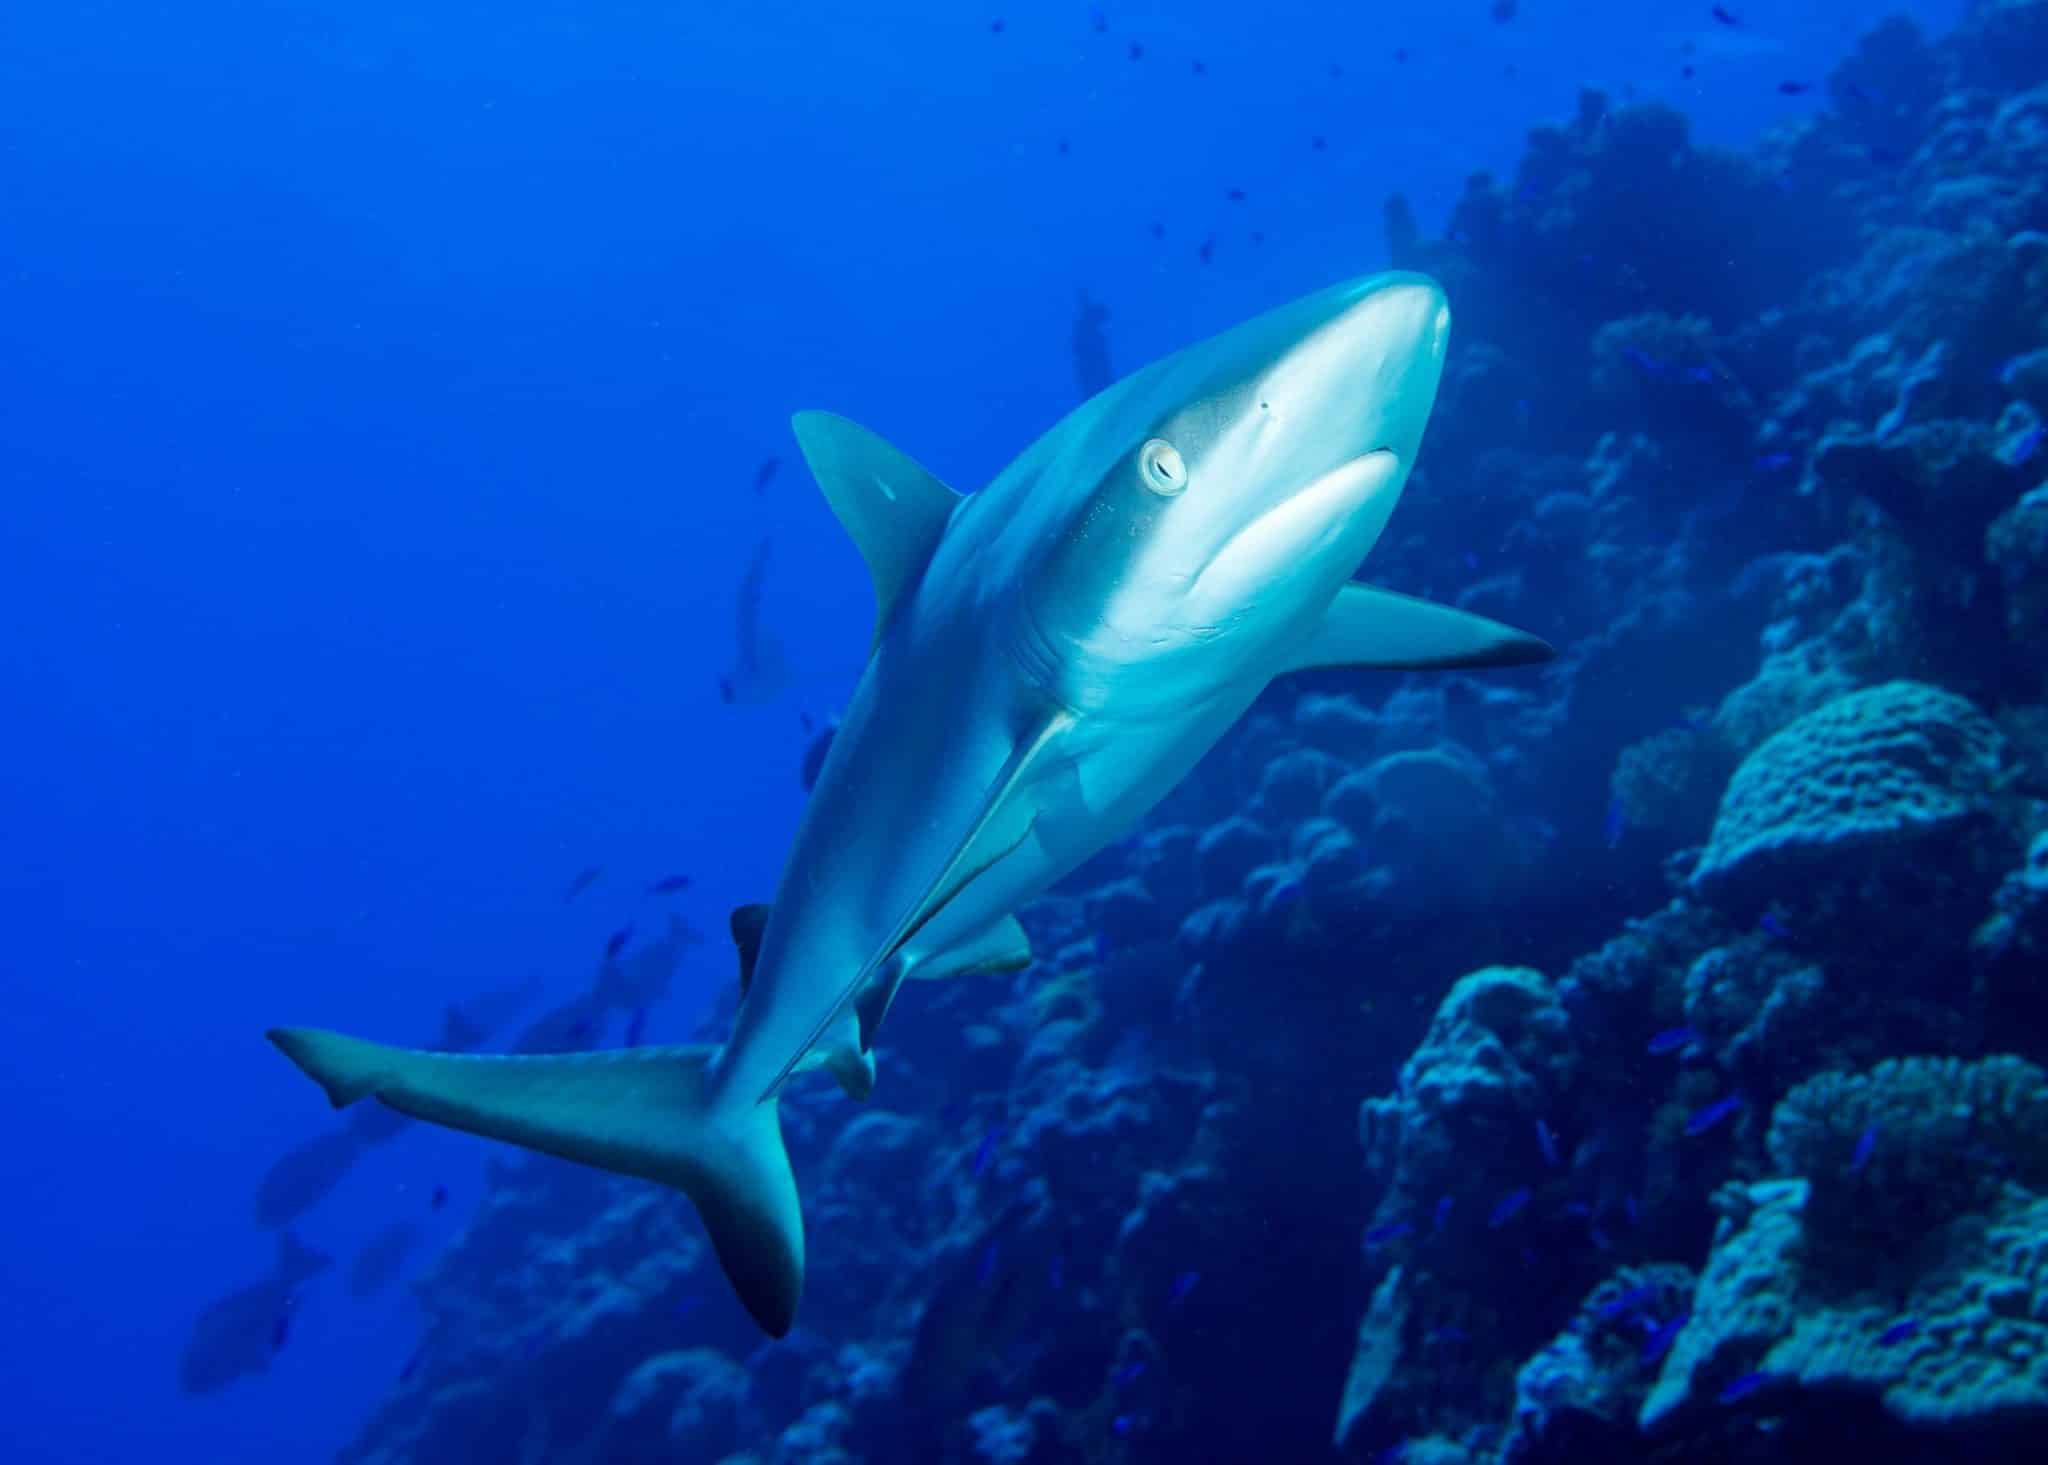 Haie auf Mauritius: Der Grauhai ist in den Gewässern des Indischen Ozeans relativ häufig zu beobachten. Foto: Unsplash